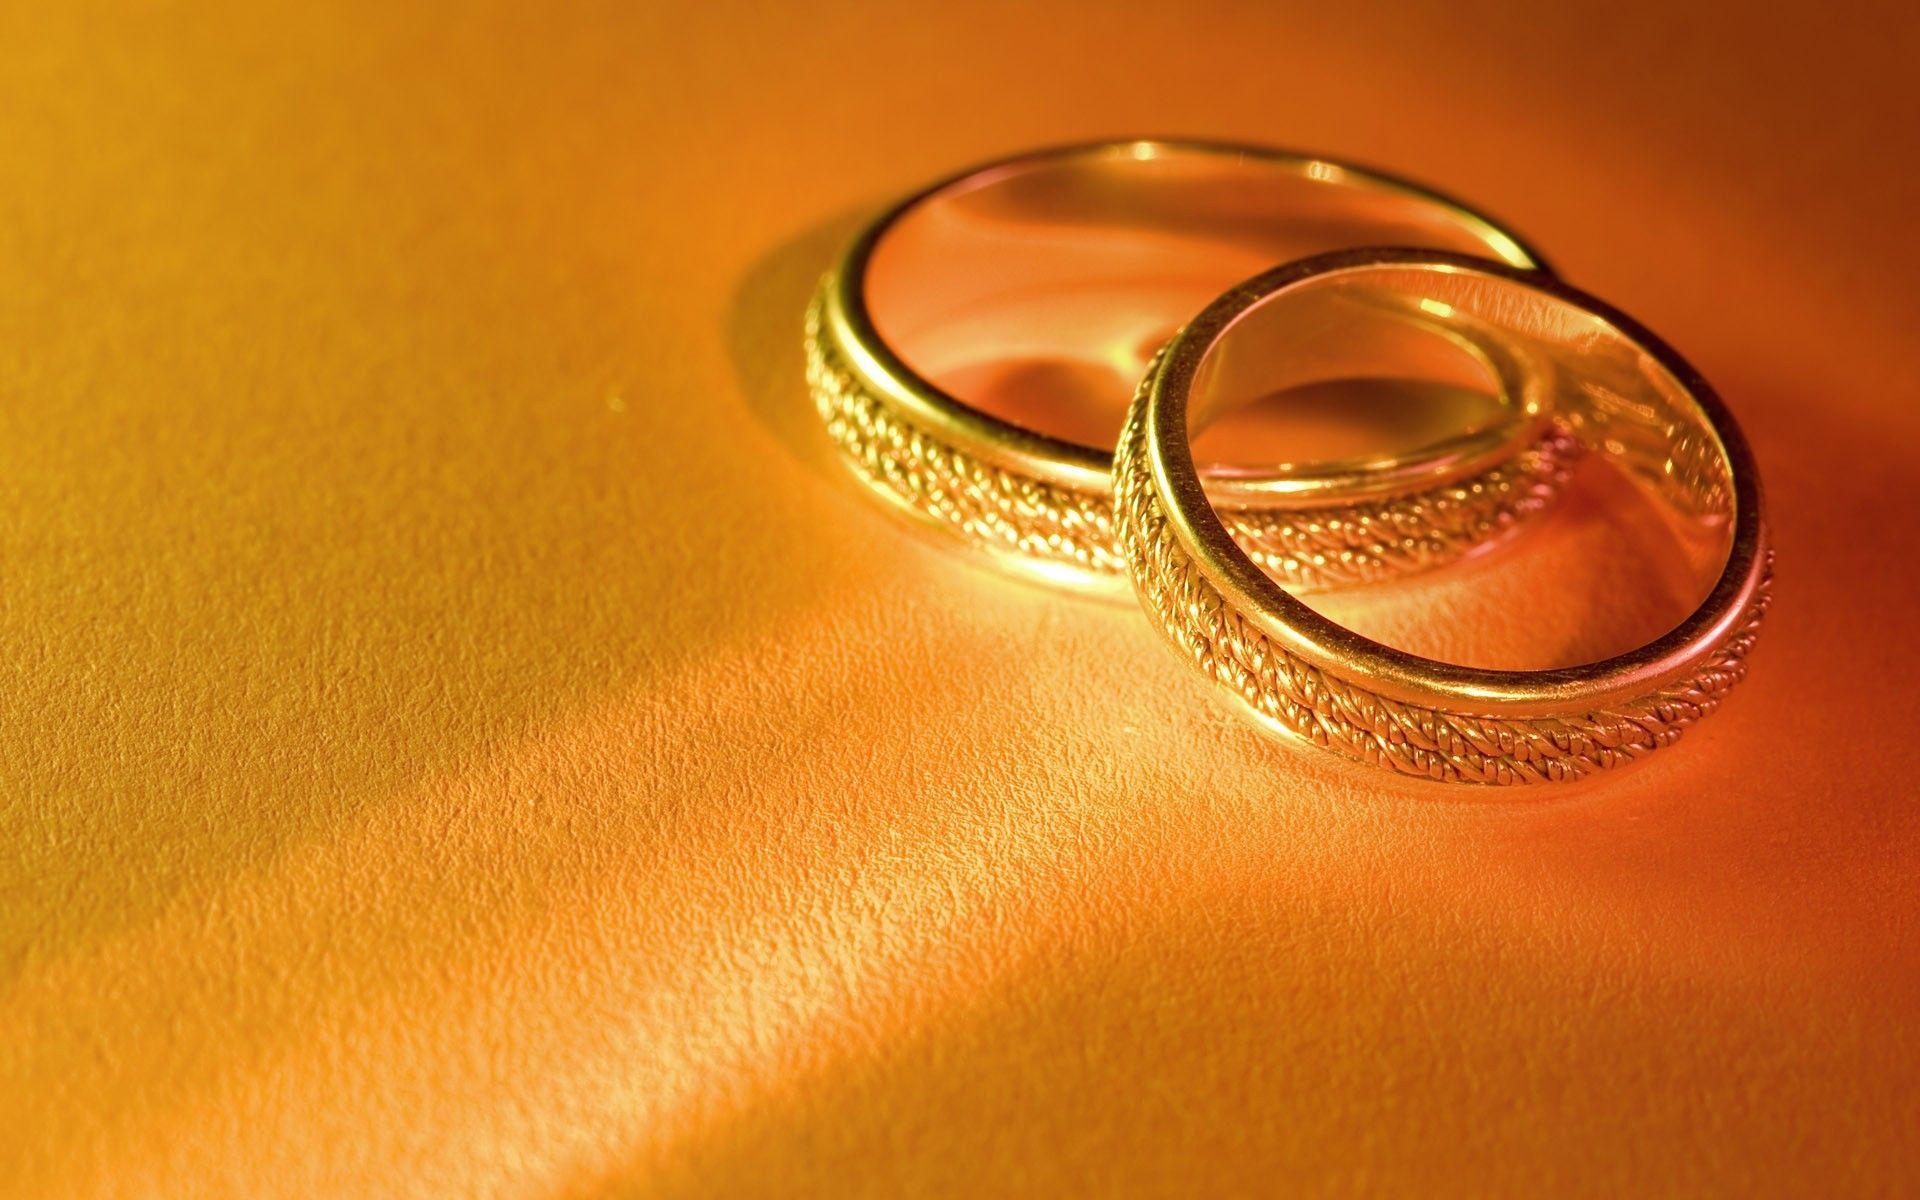 Với sự rực rỡ của vàng, chiếc nhẫn này không chỉ là món trang sức đẹp mà còn tỏa sáng và tỏa nét cá tính riêng của chủ nhân. Vẻ đẹp đầy cuốn hút của chiếc nhẫn vàng sẽ khiến bạn mê mẩn ngay từ lần nhìn đầu tiên. Hãy xem hình ảnh chiếc nhẫn vàng lấp lánh này để cảm nhận vẻ đẹp hoàn hảo.